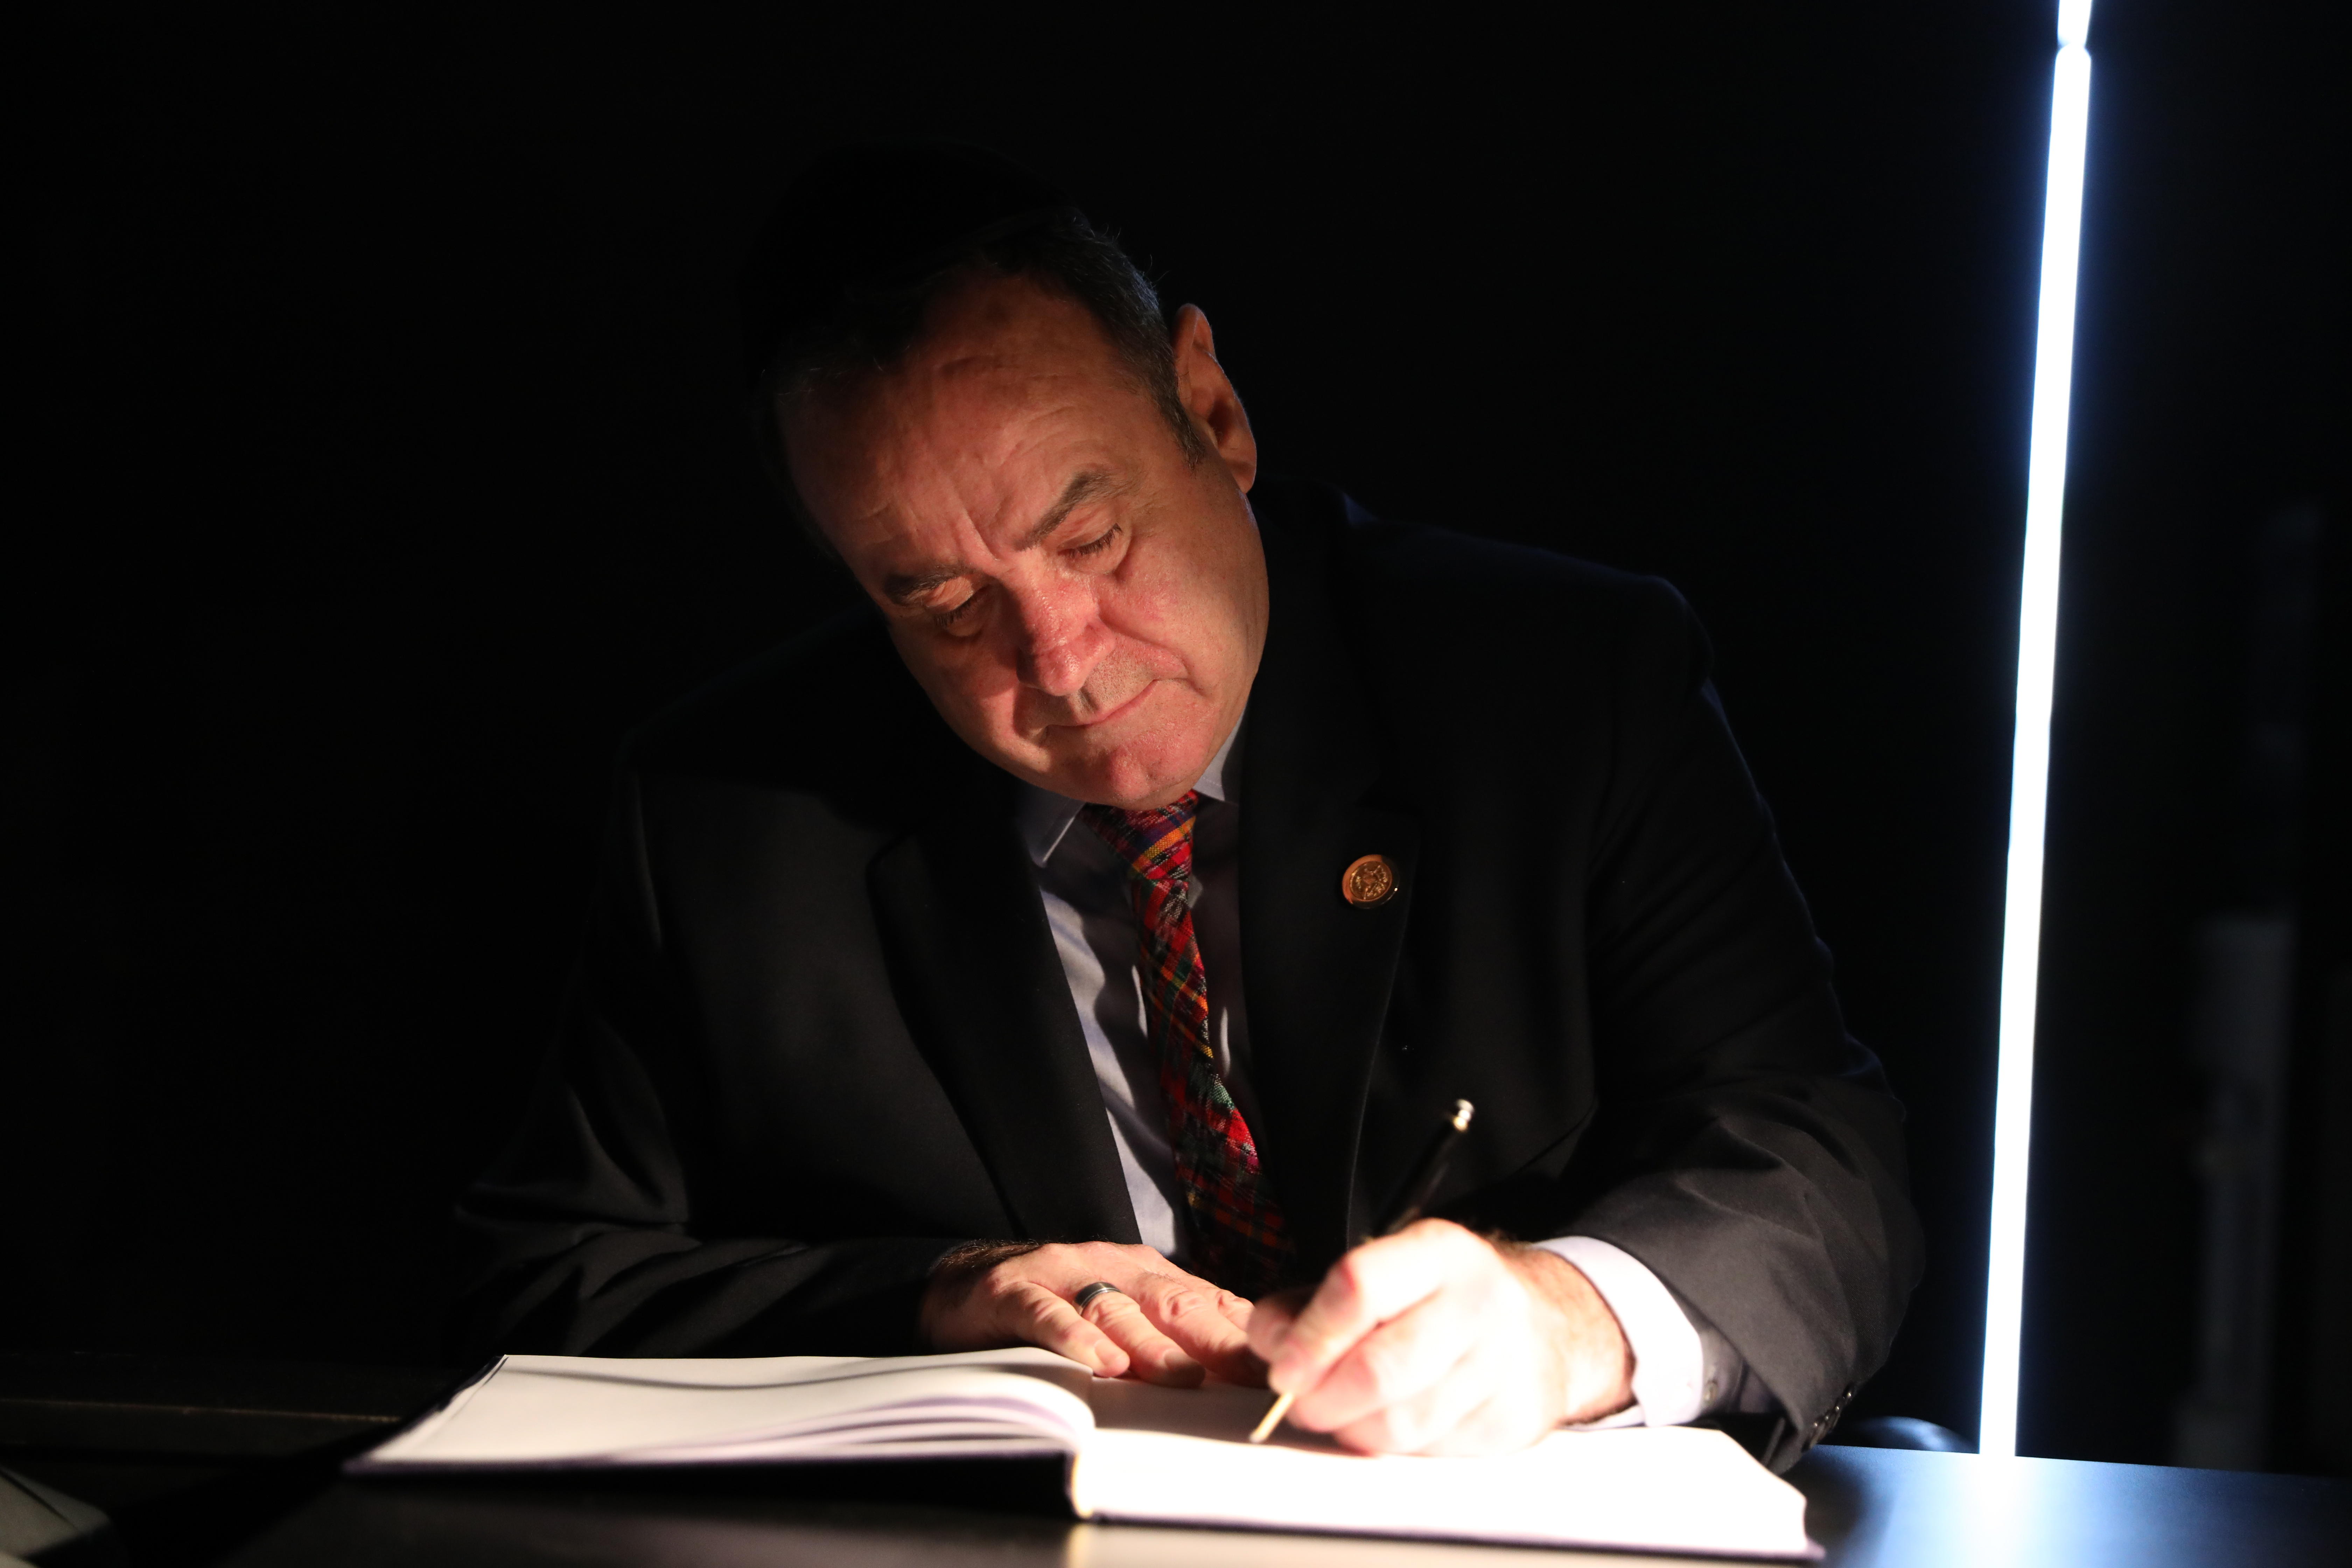 El presidente electo de Guatemala, Alejandro Giammattei, firma el libro de visitas en el Salón de la Memoria en el museo conmemorativo del Holocausto Yad Vashem en Jerusalén. (Foto Prensa Libre: EFE)